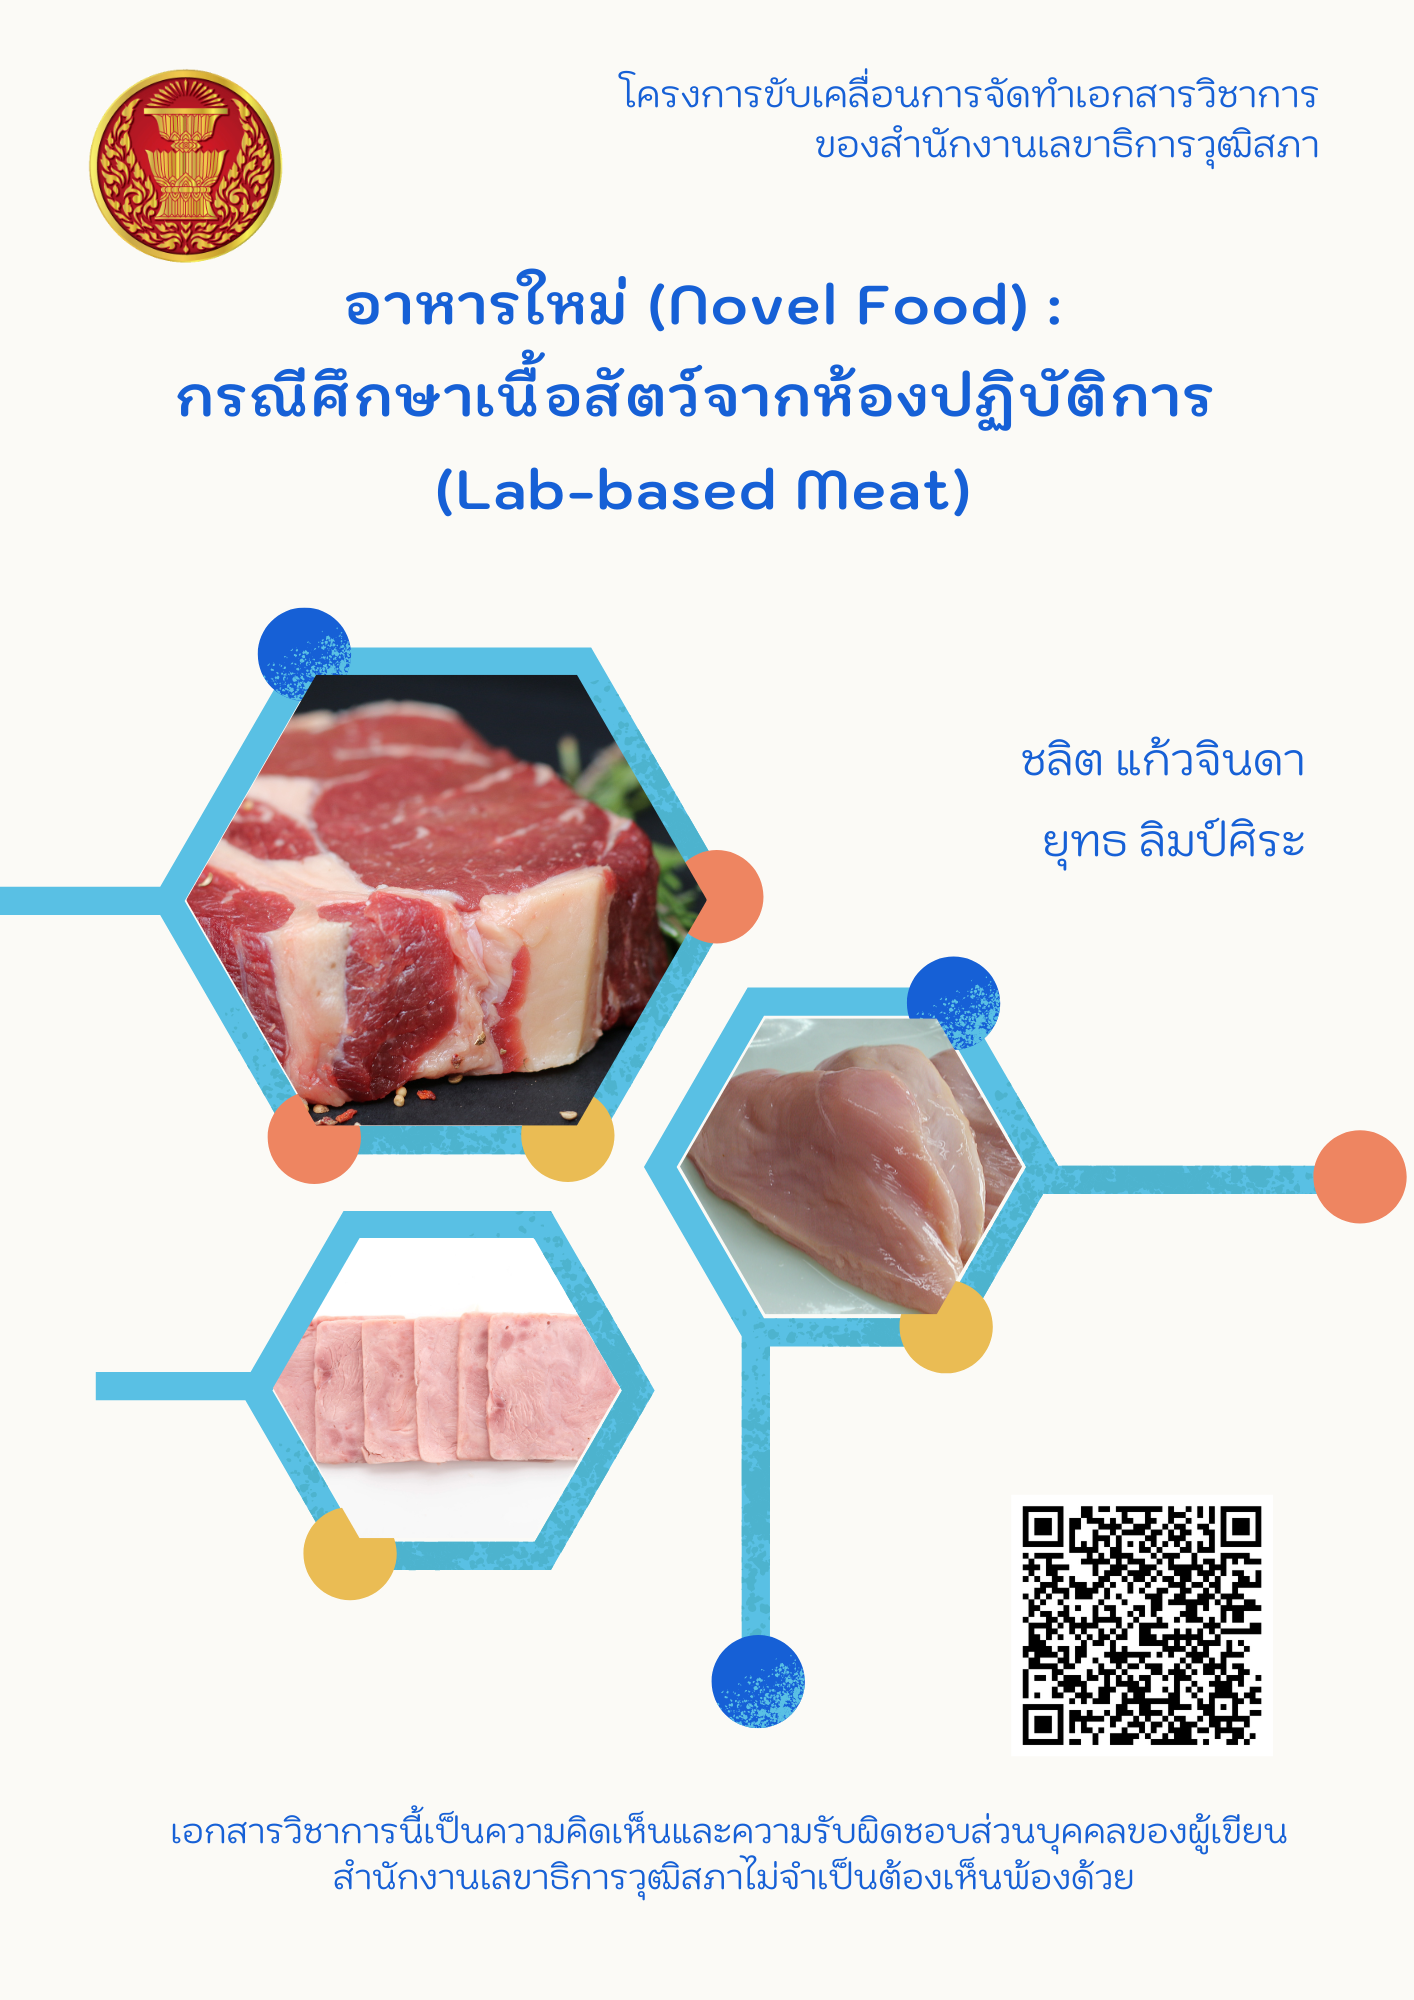 อาหารใหม่ (Novel Food): กรณีศึกษาเนื้อสัตว์จากห้องปฏิบัติการ (Lab-based Meat)